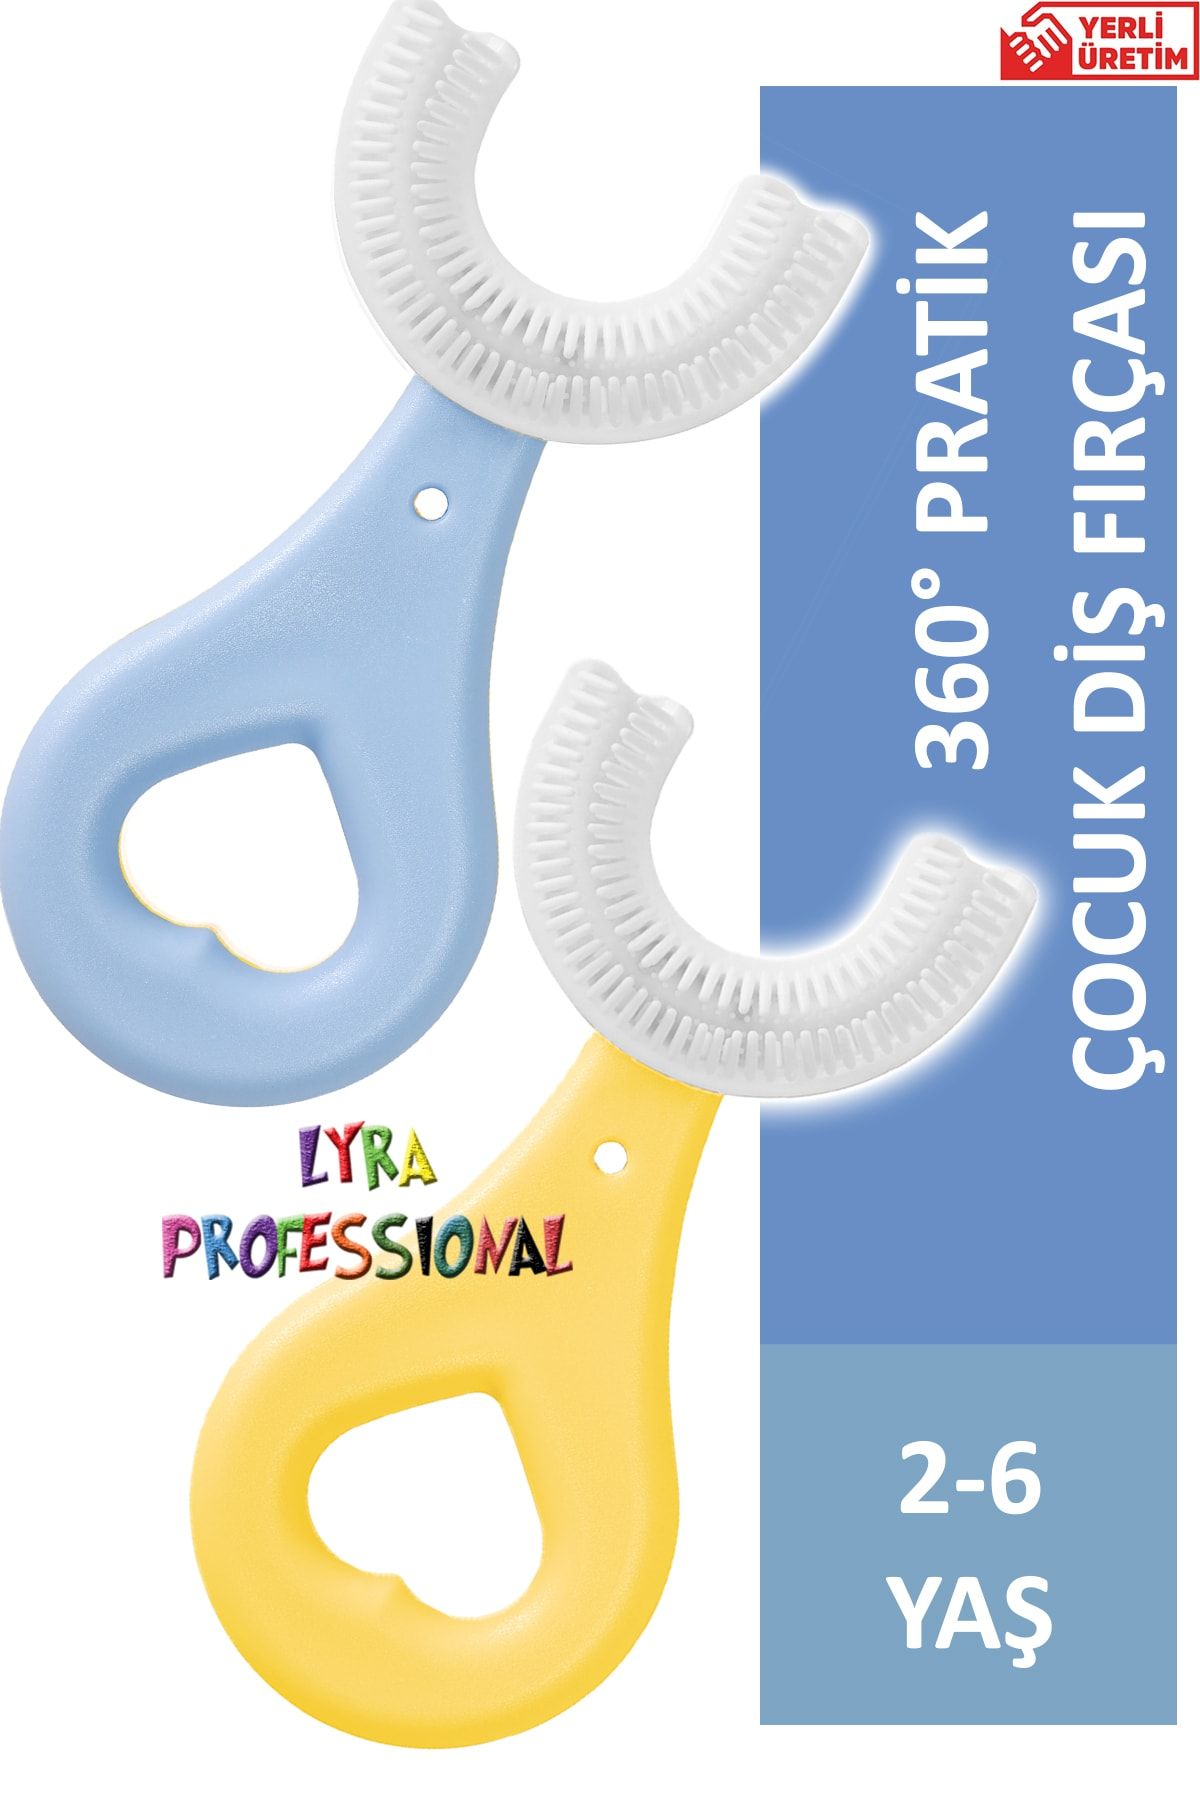 Lyra Professional U Şeklinde Pratik Çocuk Diş Fırçası 3-6 Yaş Sarı Mavi